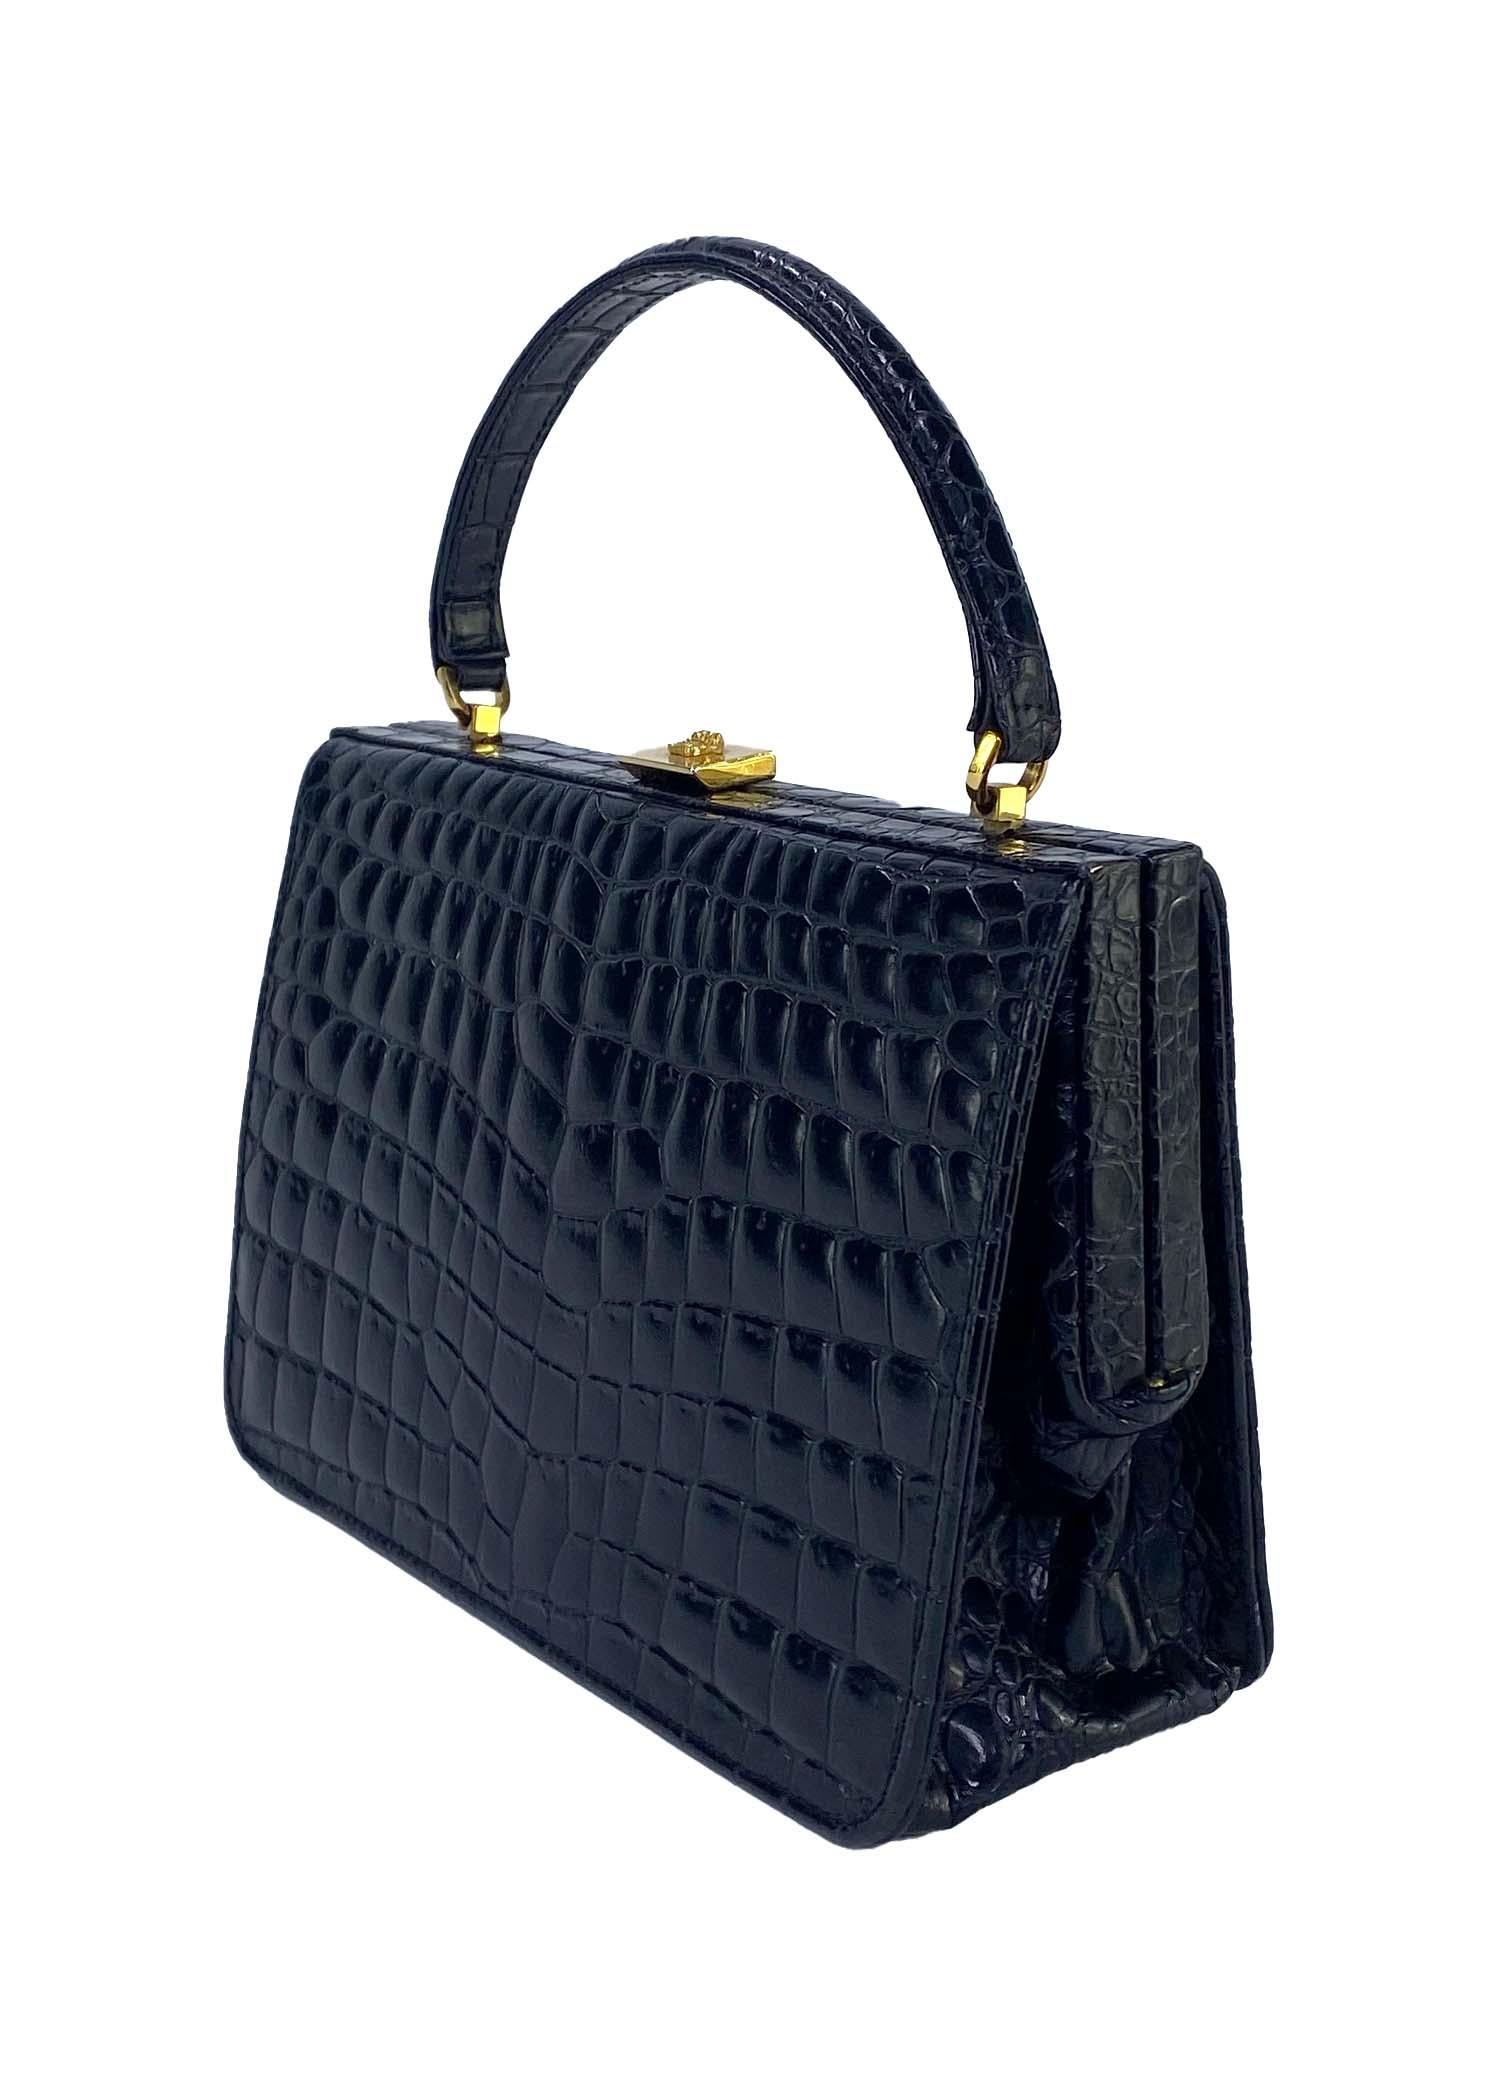 Wir präsentieren eine wunderschöne Gianni Versace Couture Tasche mit geprägtem Krokodil am oberen Griff, entworfen von Gianni Versace. Diese Tasche aus den frühen/mittleren 1990er Jahren ist komplett aus geprägtem Leder gefertigt und verfügt über